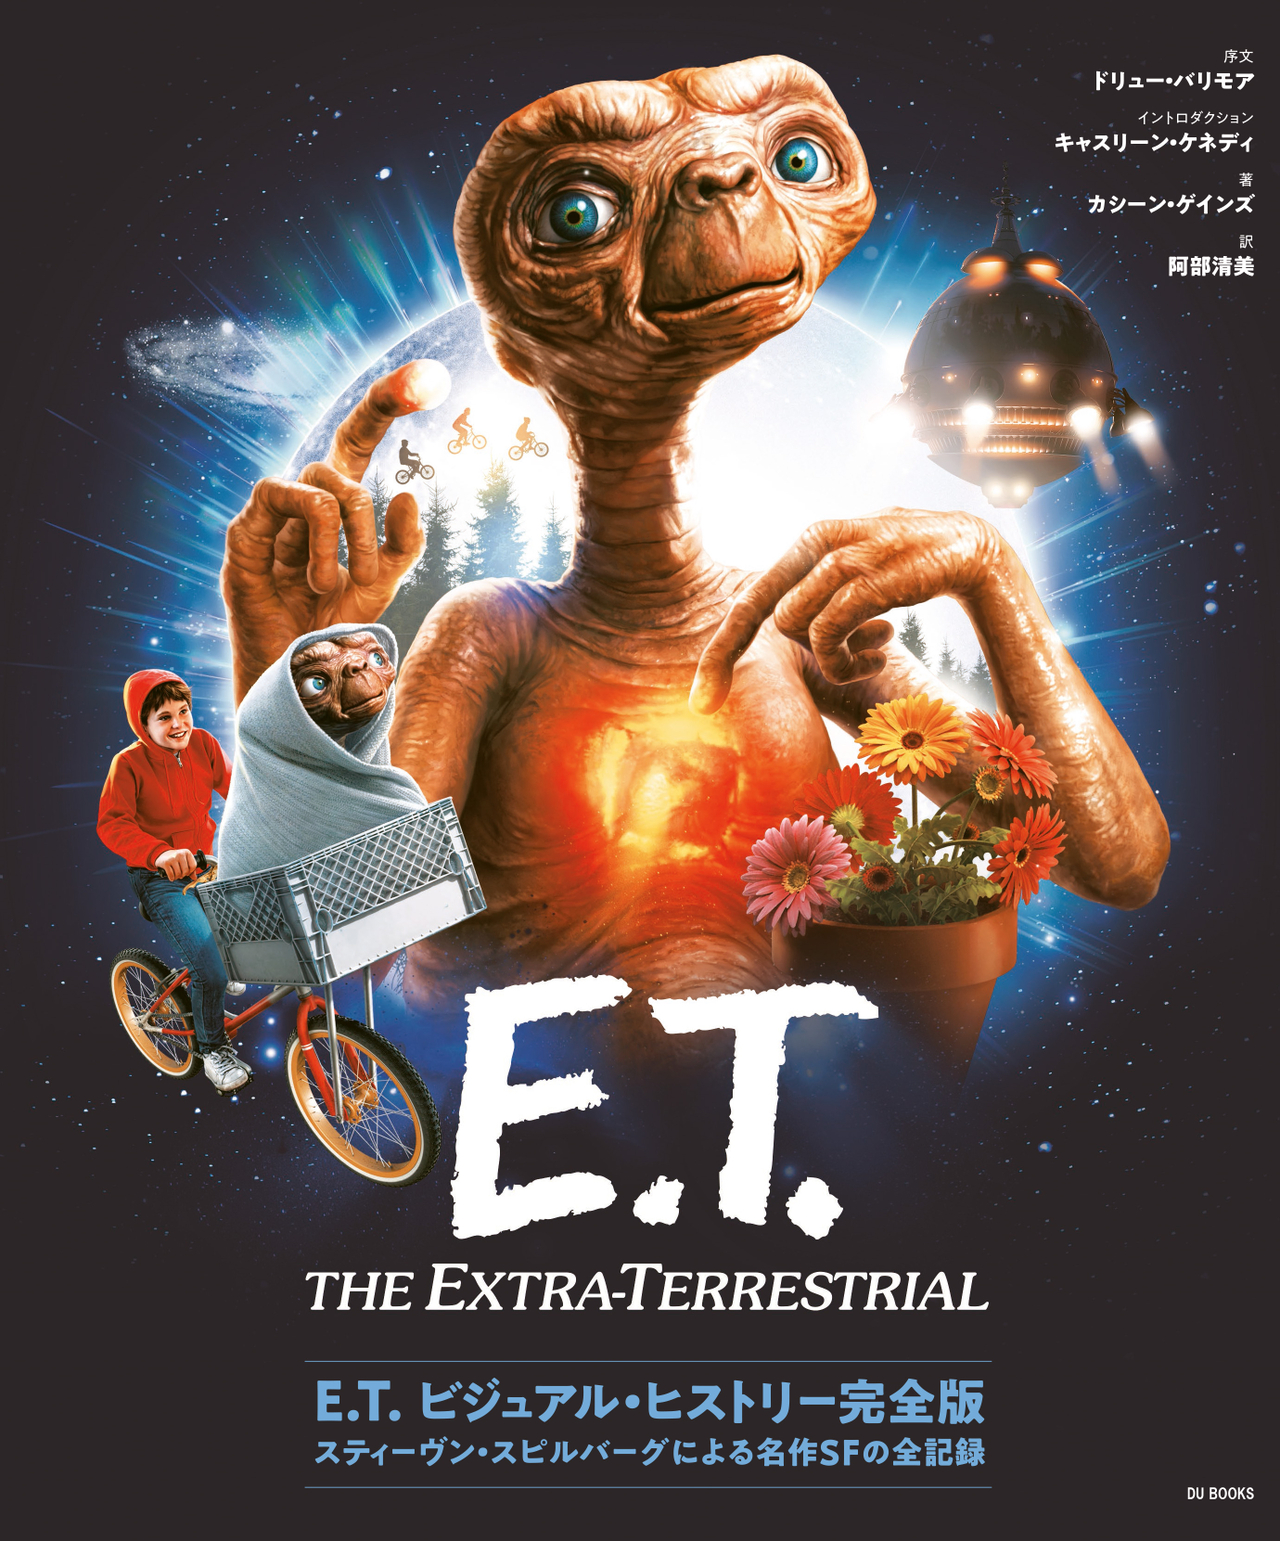 【画像多数あり】スピルバーグによる全記録「E.T.ビジュアル・ヒストリー完全版」発売